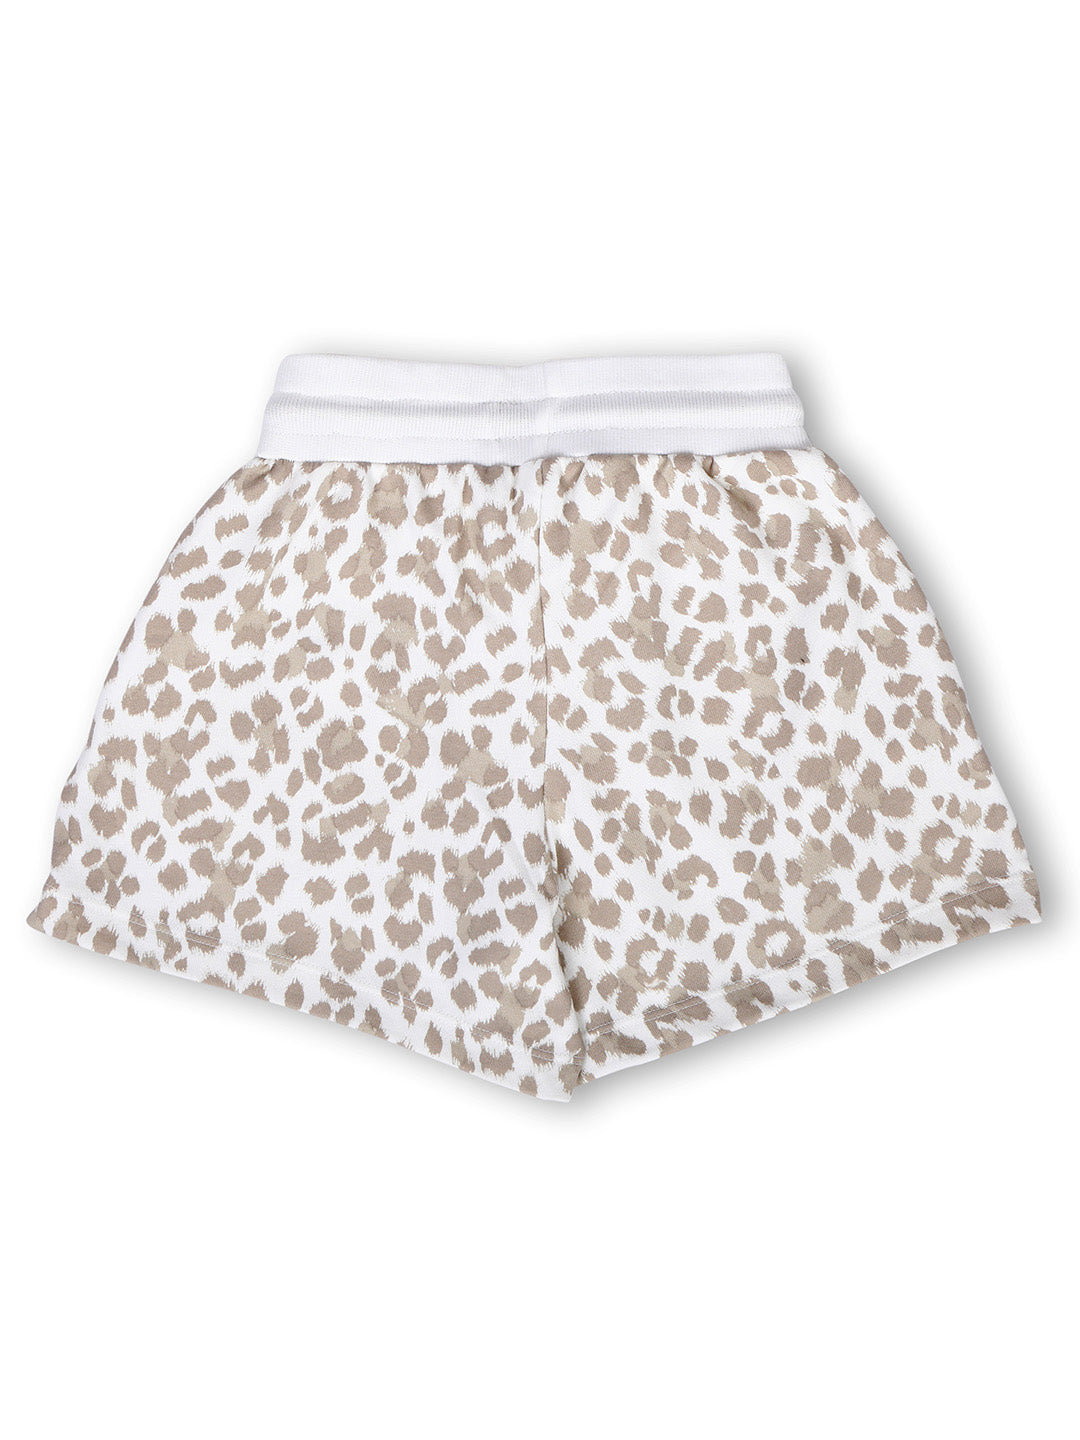 TWGE - Kids Shorts for Girls - Short Pants - Printed Regular Fit Half Pants - Color Hazzel White